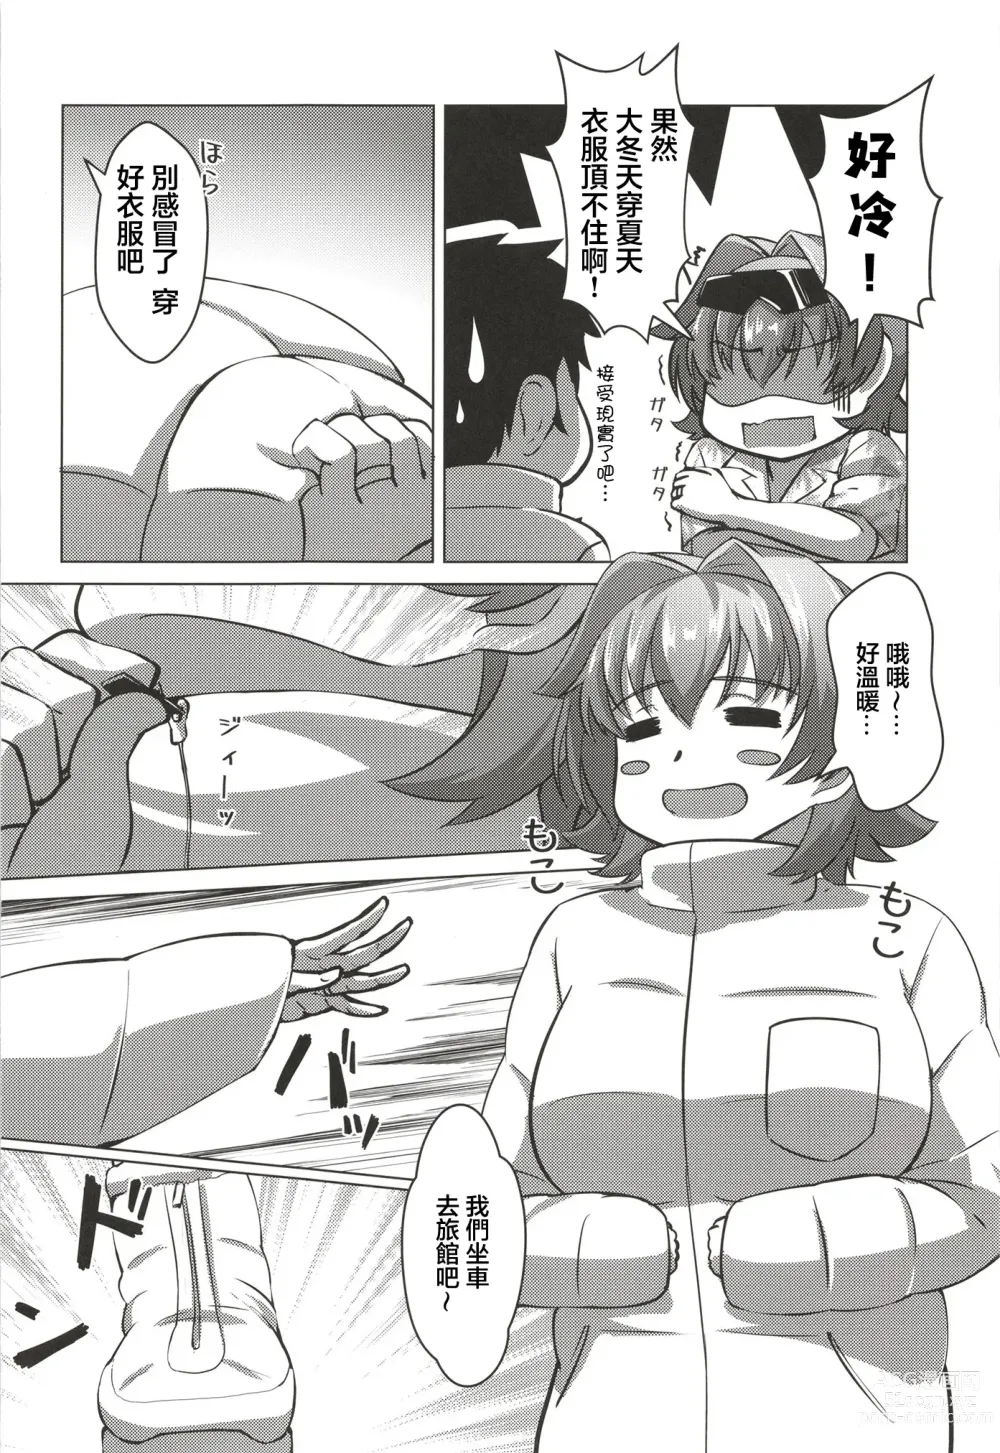 Page 4 of doujinshi 和鬼怒的新婚旅行的故事